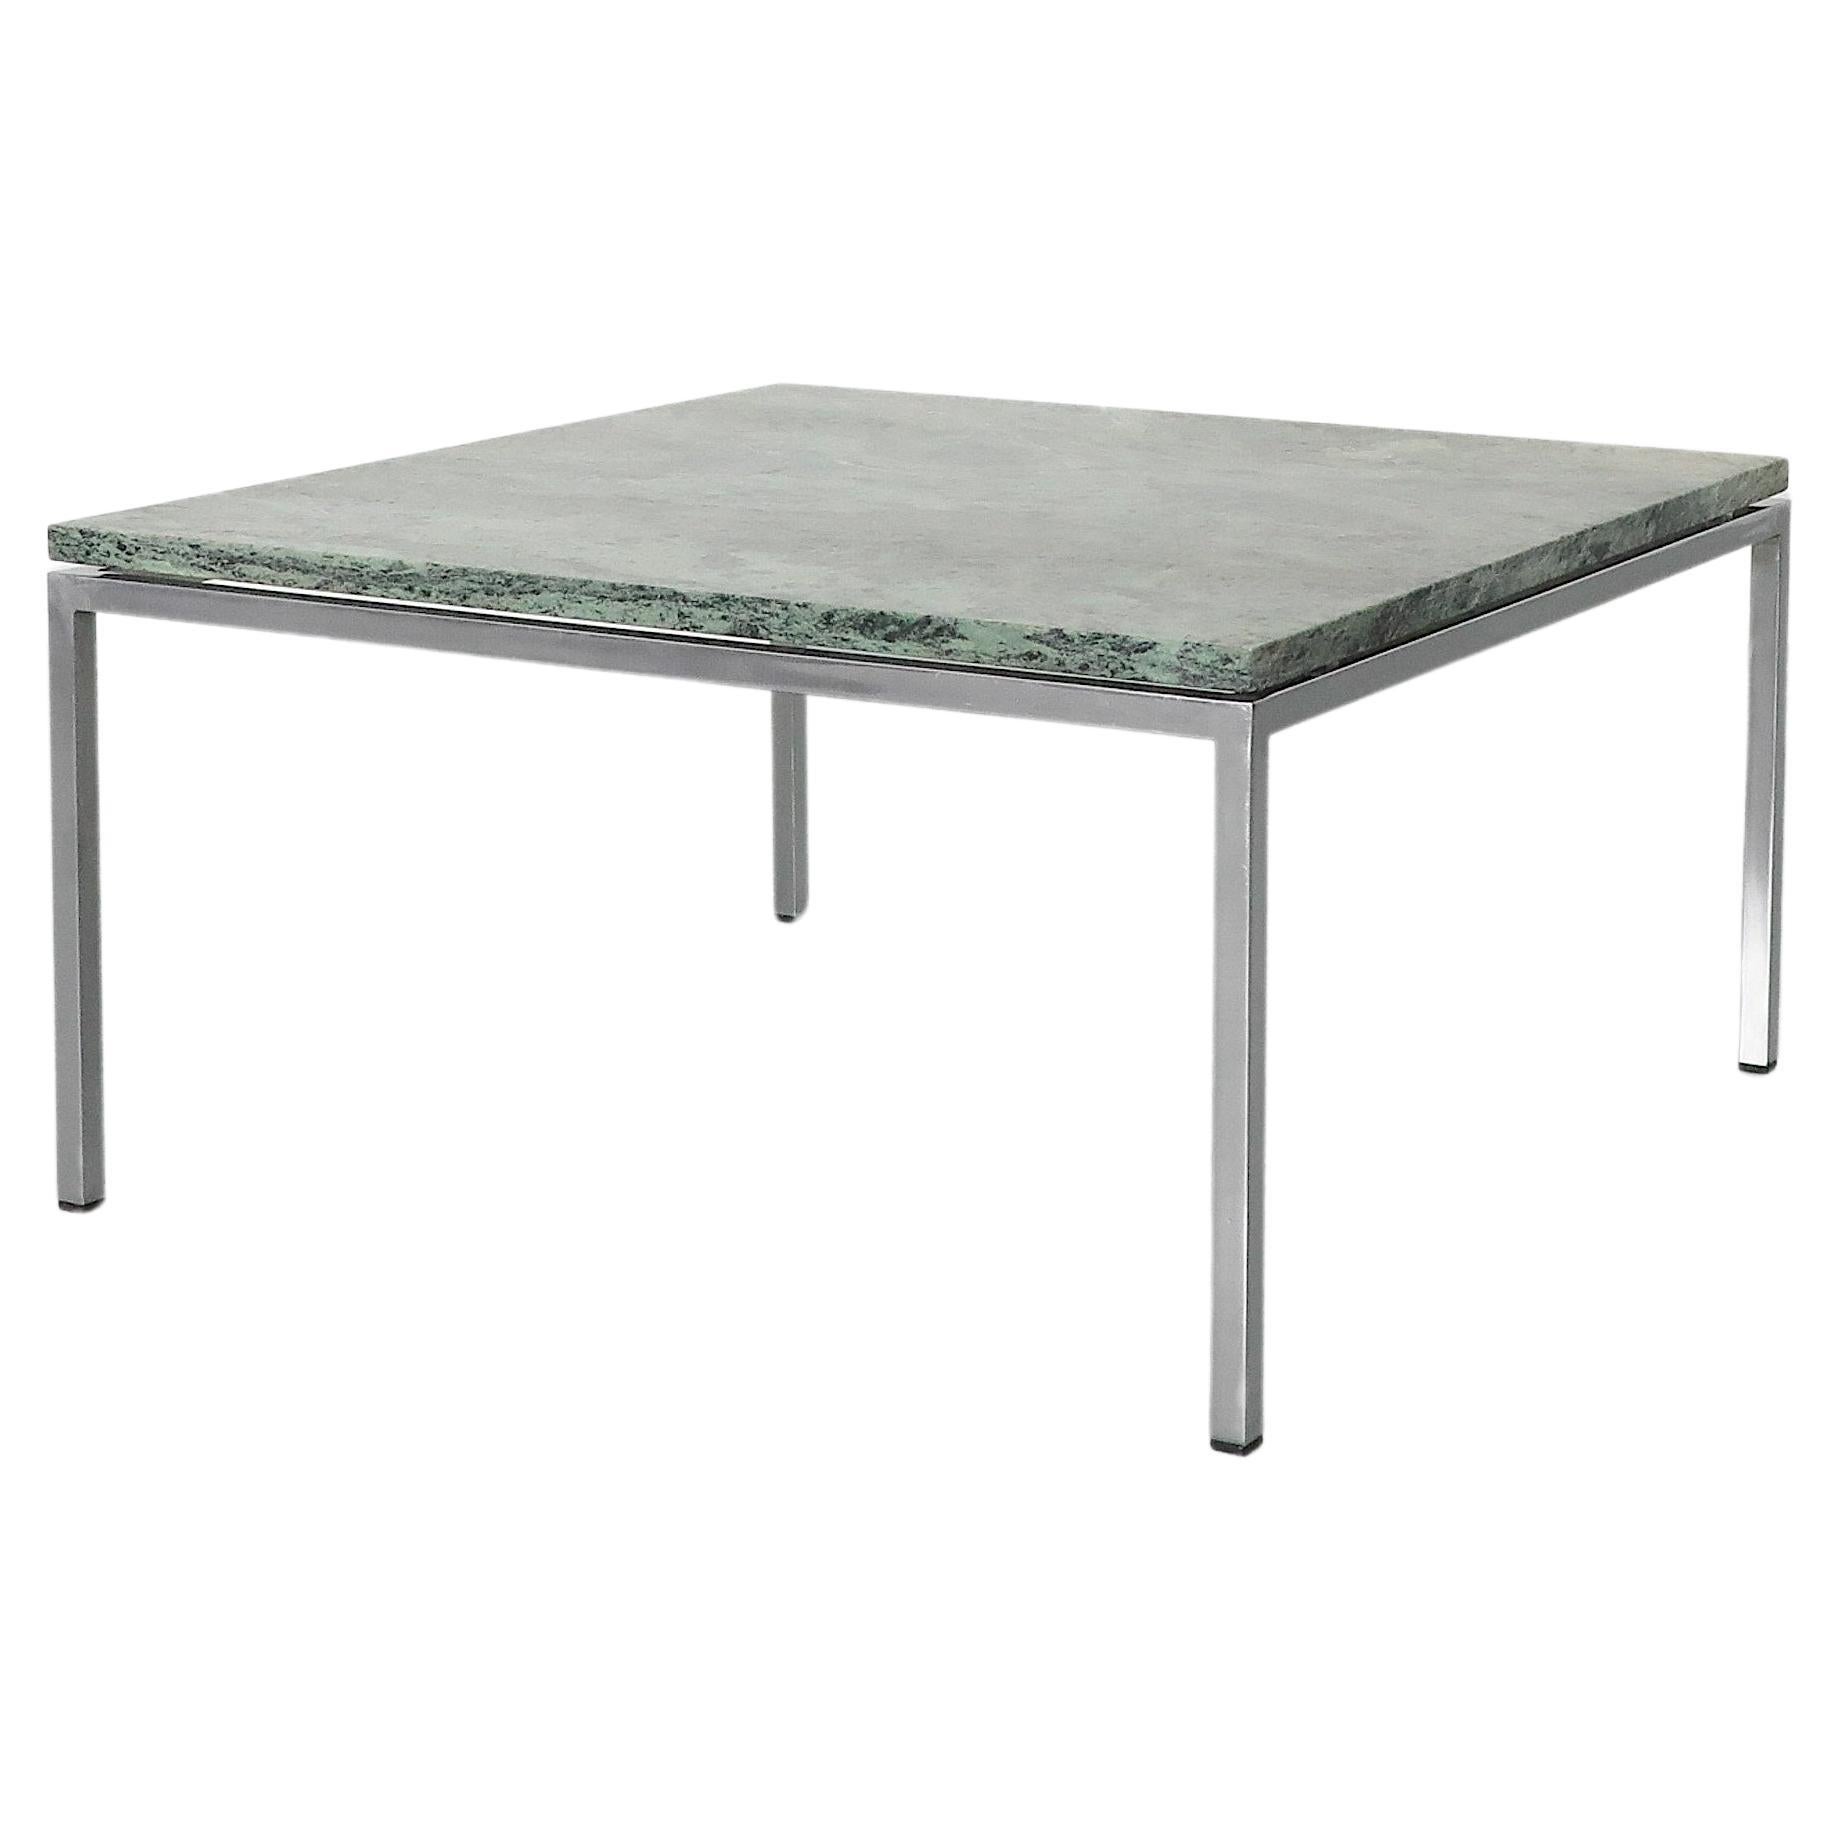 Table basse chromée Metaform avec plateau en marbre vert en vente